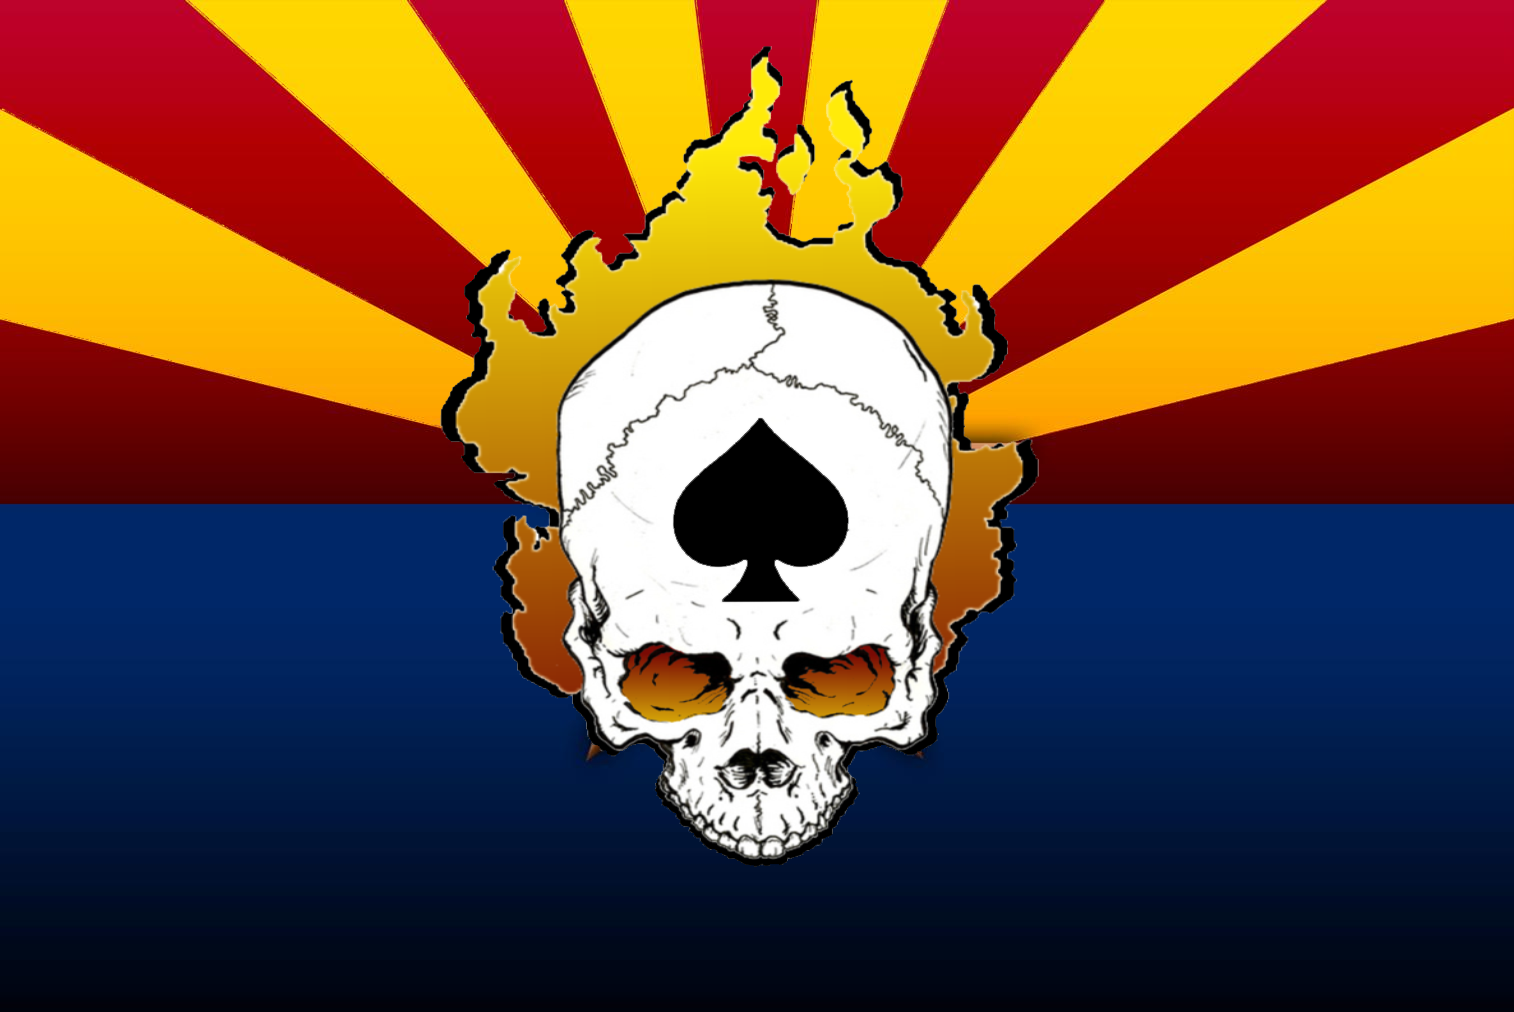 az_flag with Skull&Spade